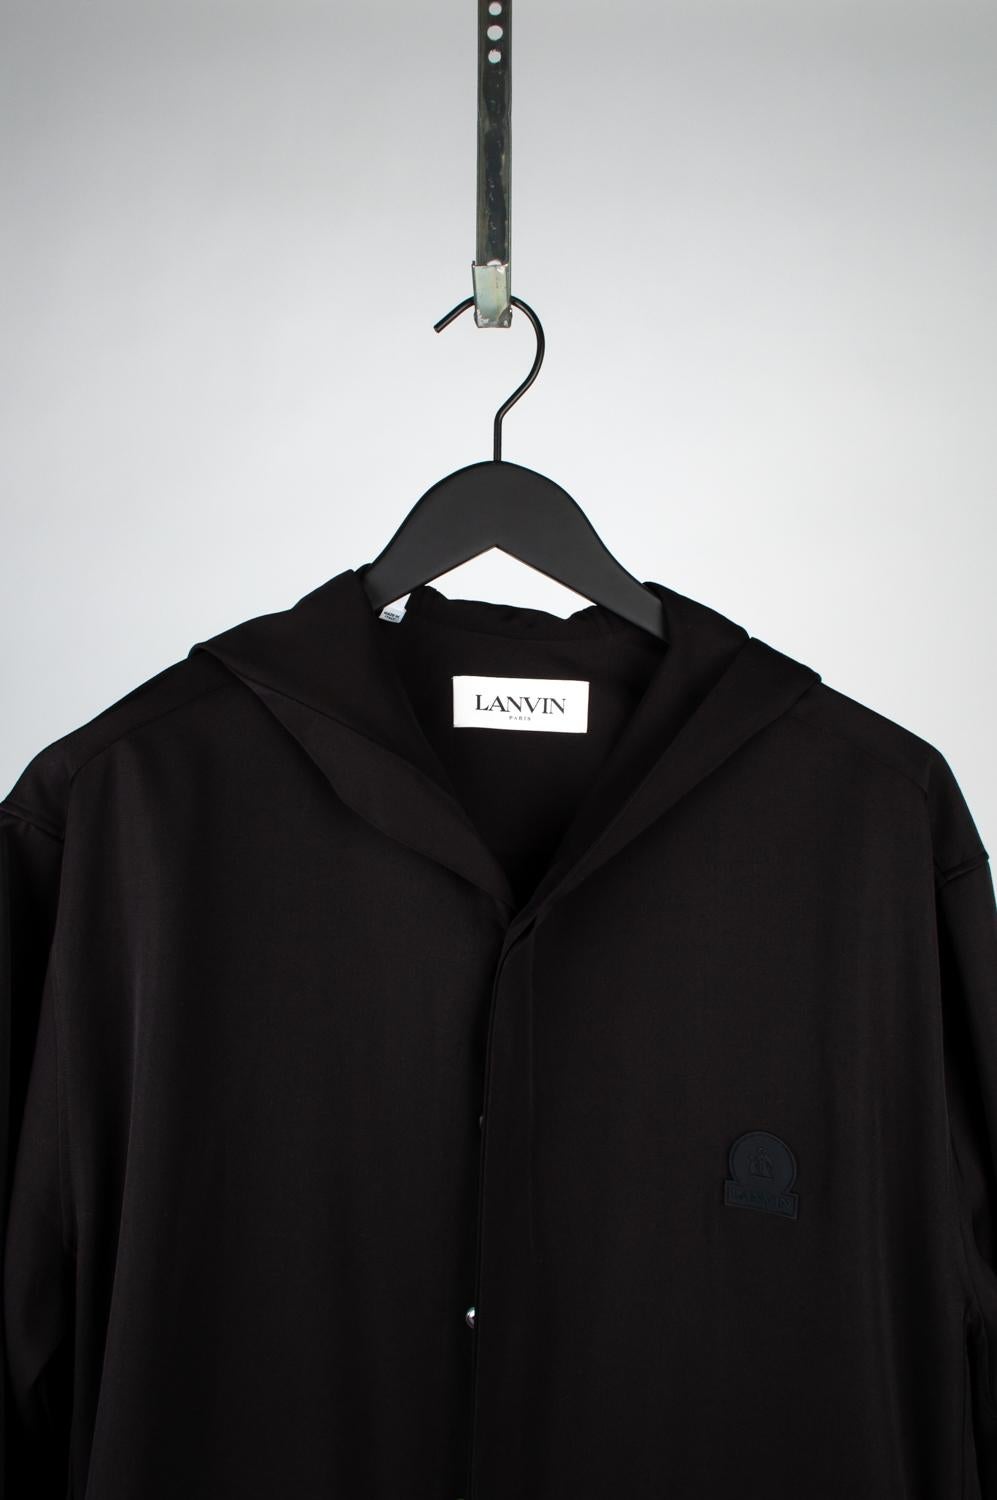 100% authentique Lanvin Hooded Light Jacket, S551-1
Couleur : Noir
(La couleur réelle peut varier légèrement en raison de l'interprétation individuelle de l'écran de l'ordinateur).
MATERIAL : 100% laine
Taille de l'étiquette : 41/16 court